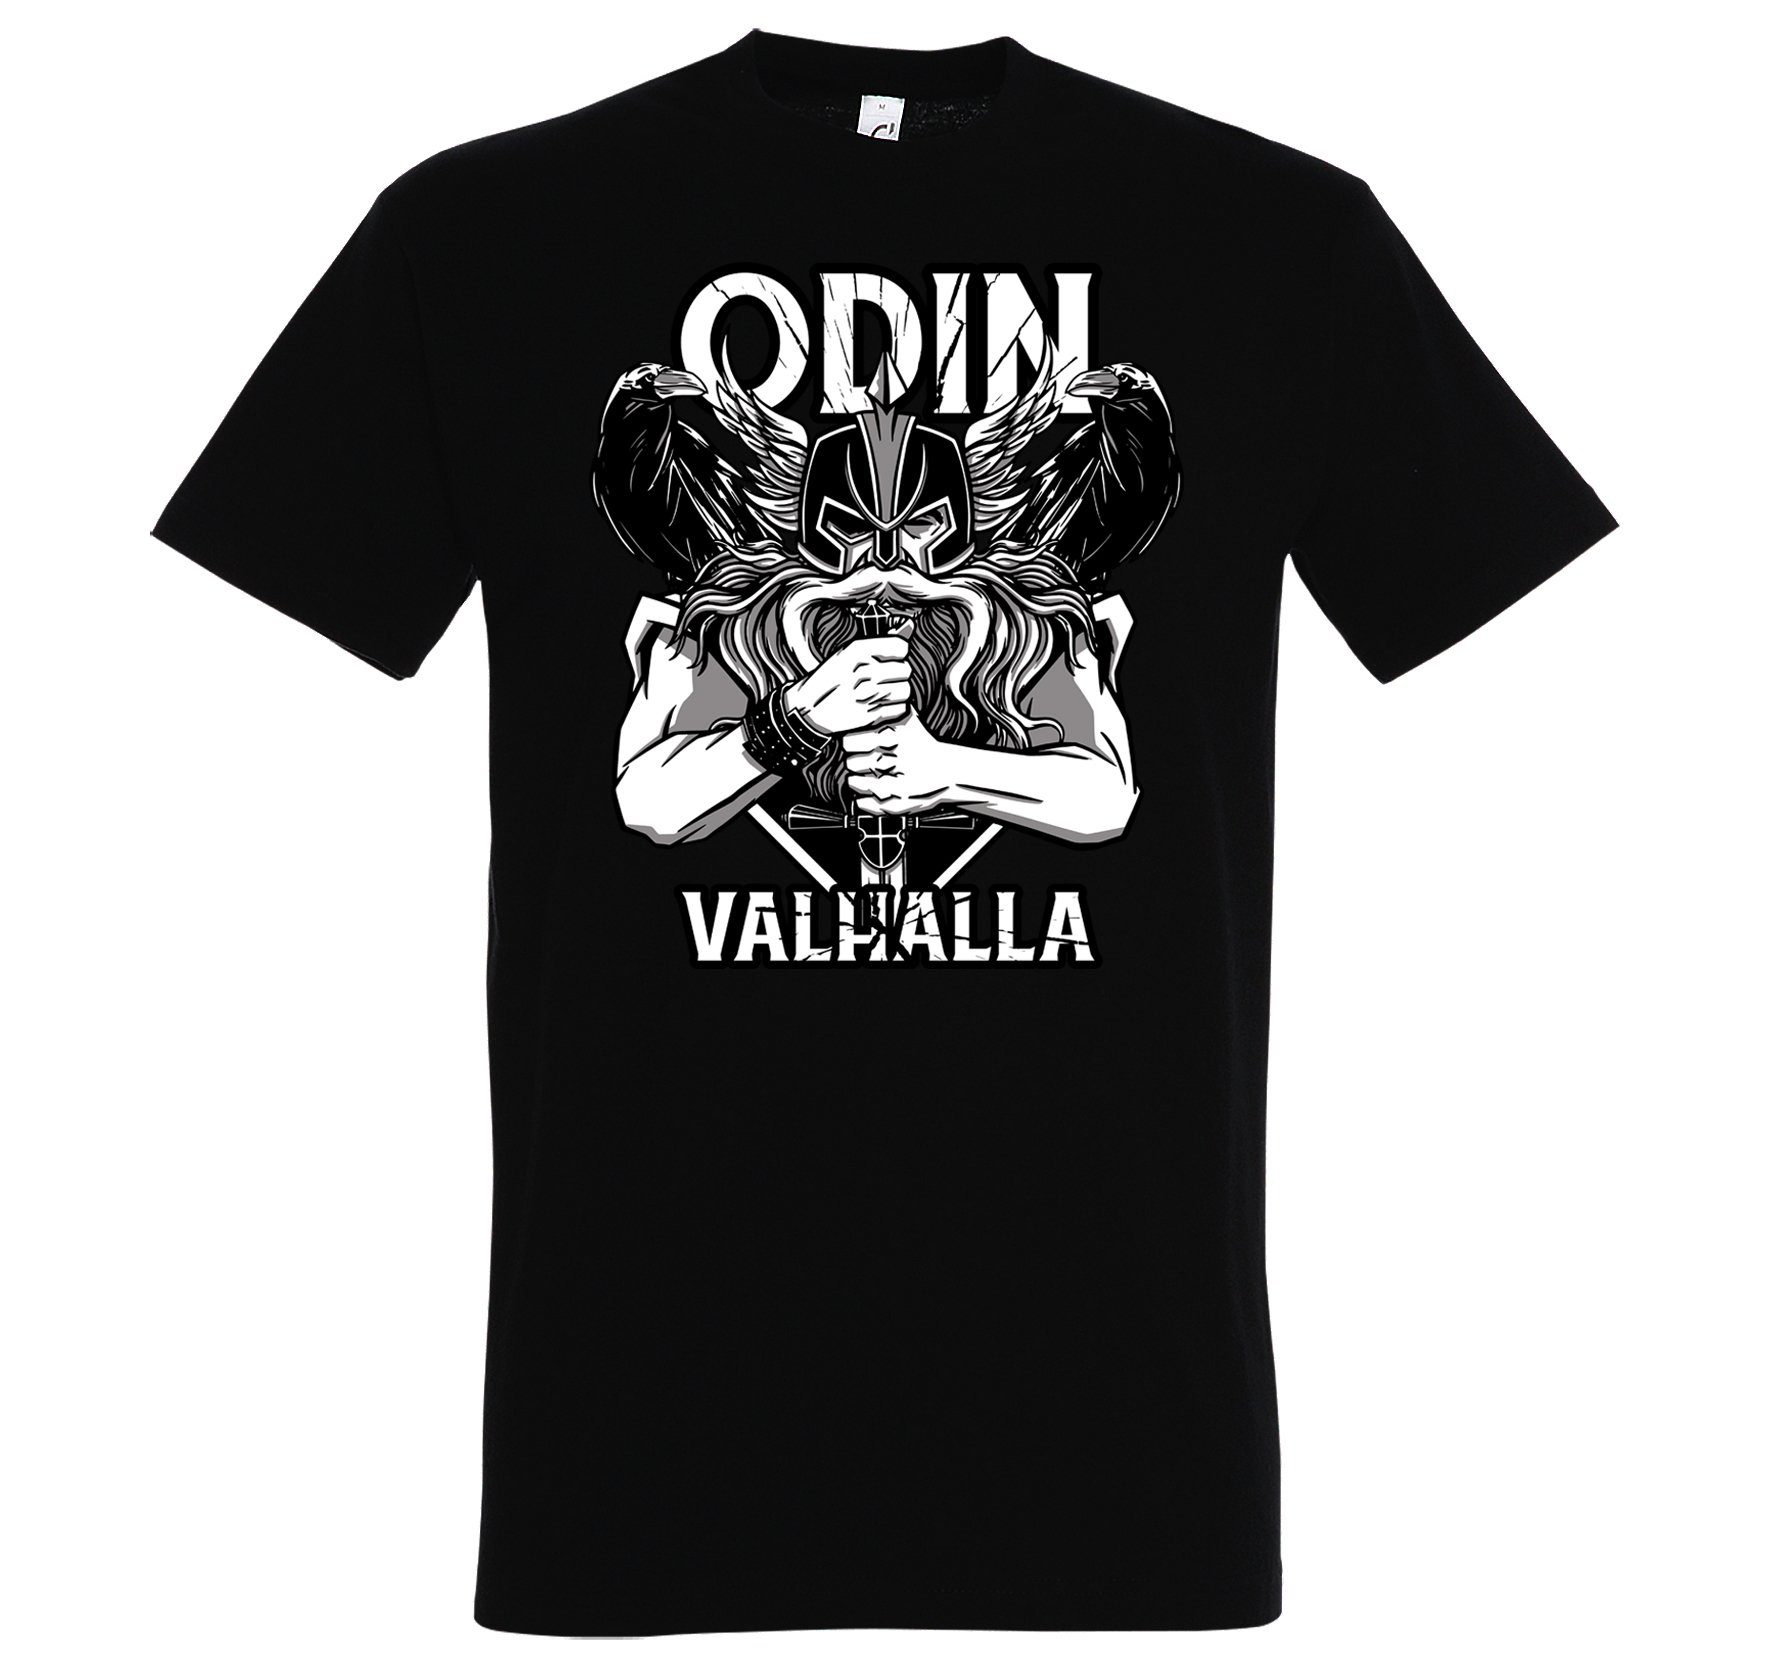 T-Shirt mit Odin Designz Herren Youth Schwarz Valhalla trendigem T-Shirt Spruch